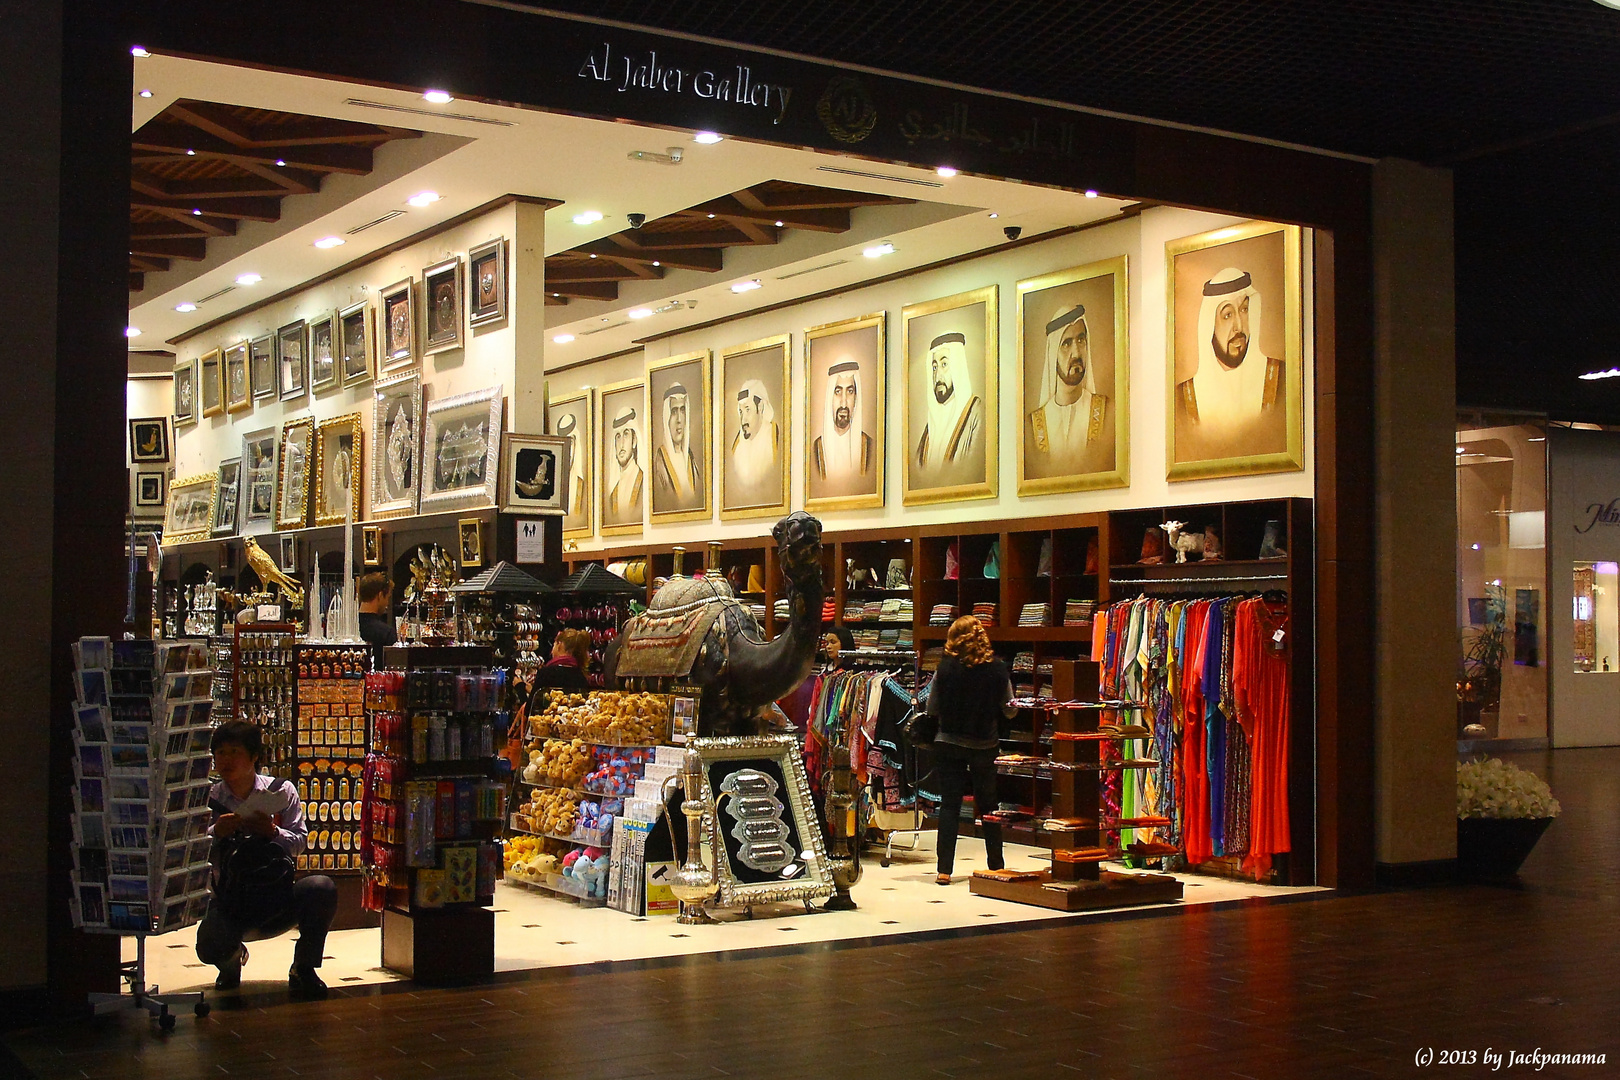 Ein winzig kleiner Teilausschnitt der riesigen Mall in Dubai